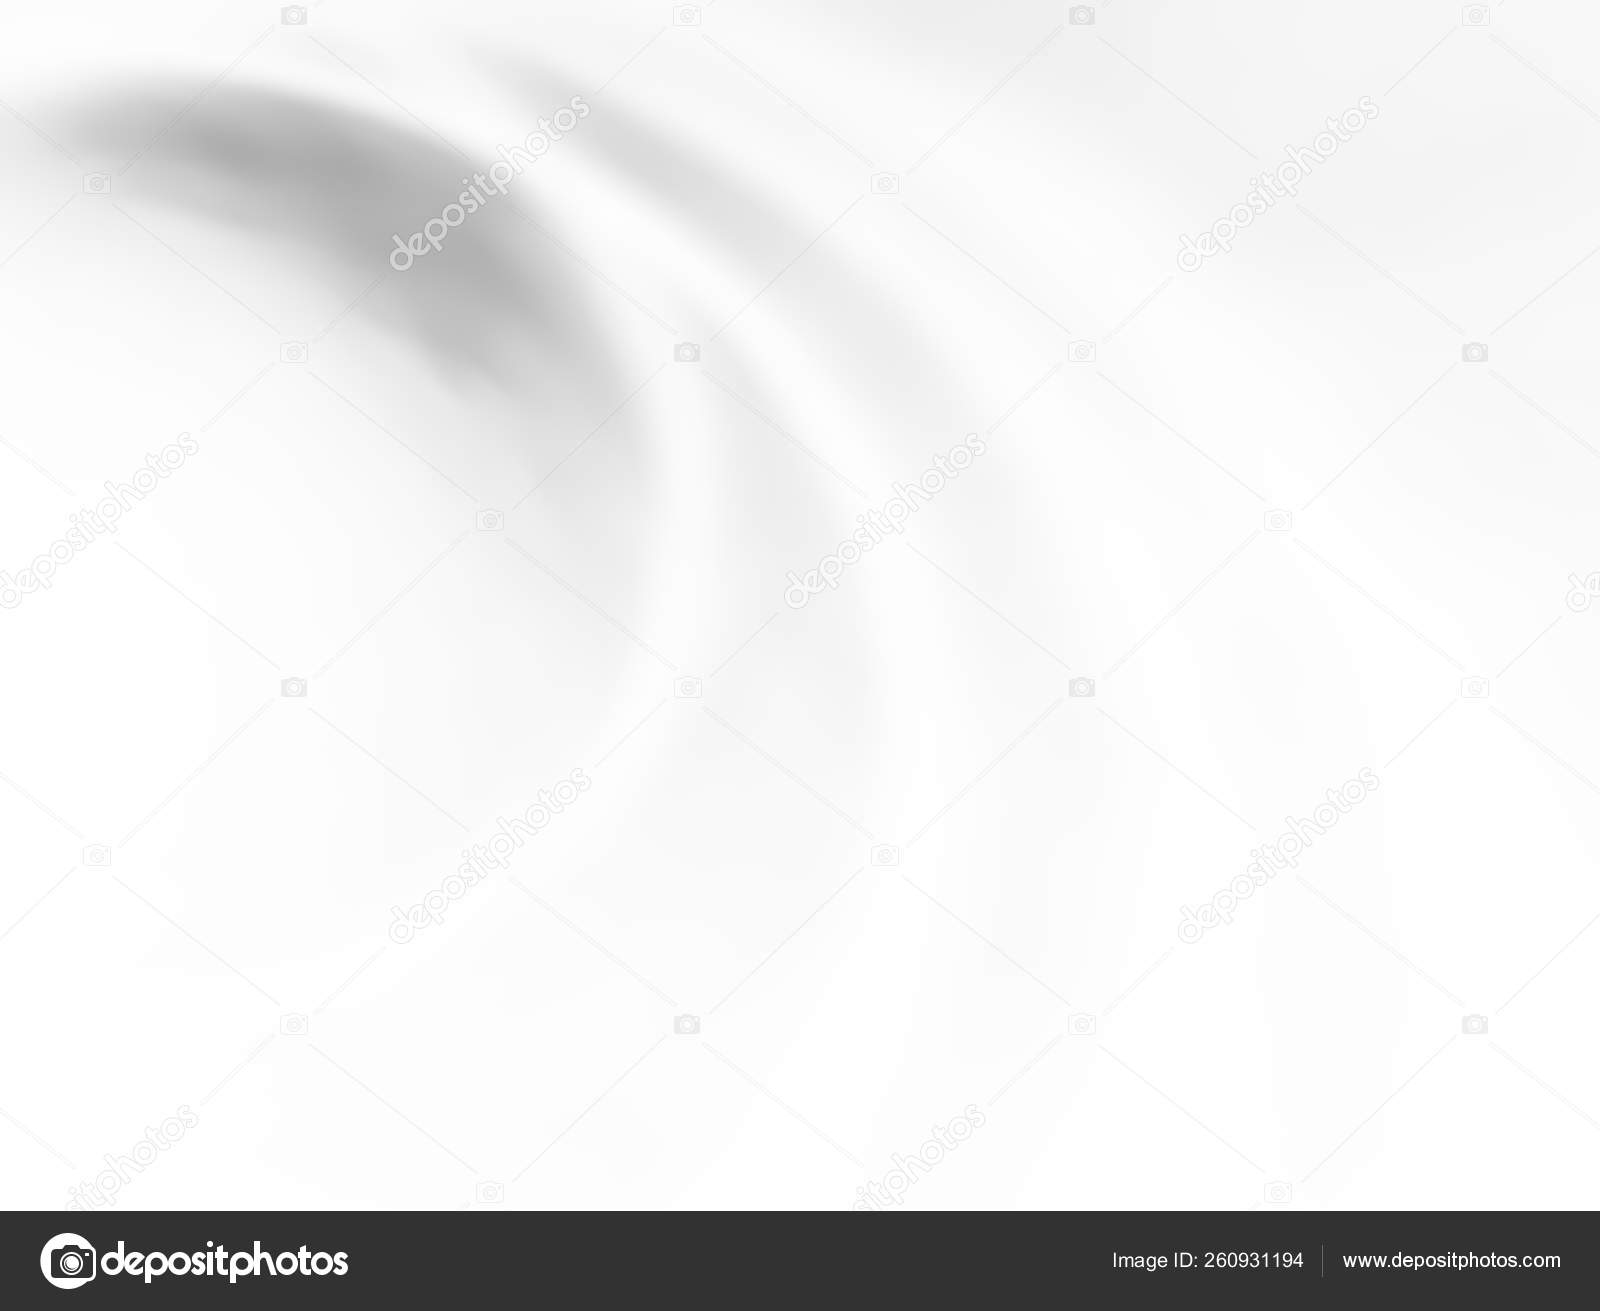 Horizontale Schwarz Weisse Leinwandstriche Hintergrund Stockfoto C Yayimages